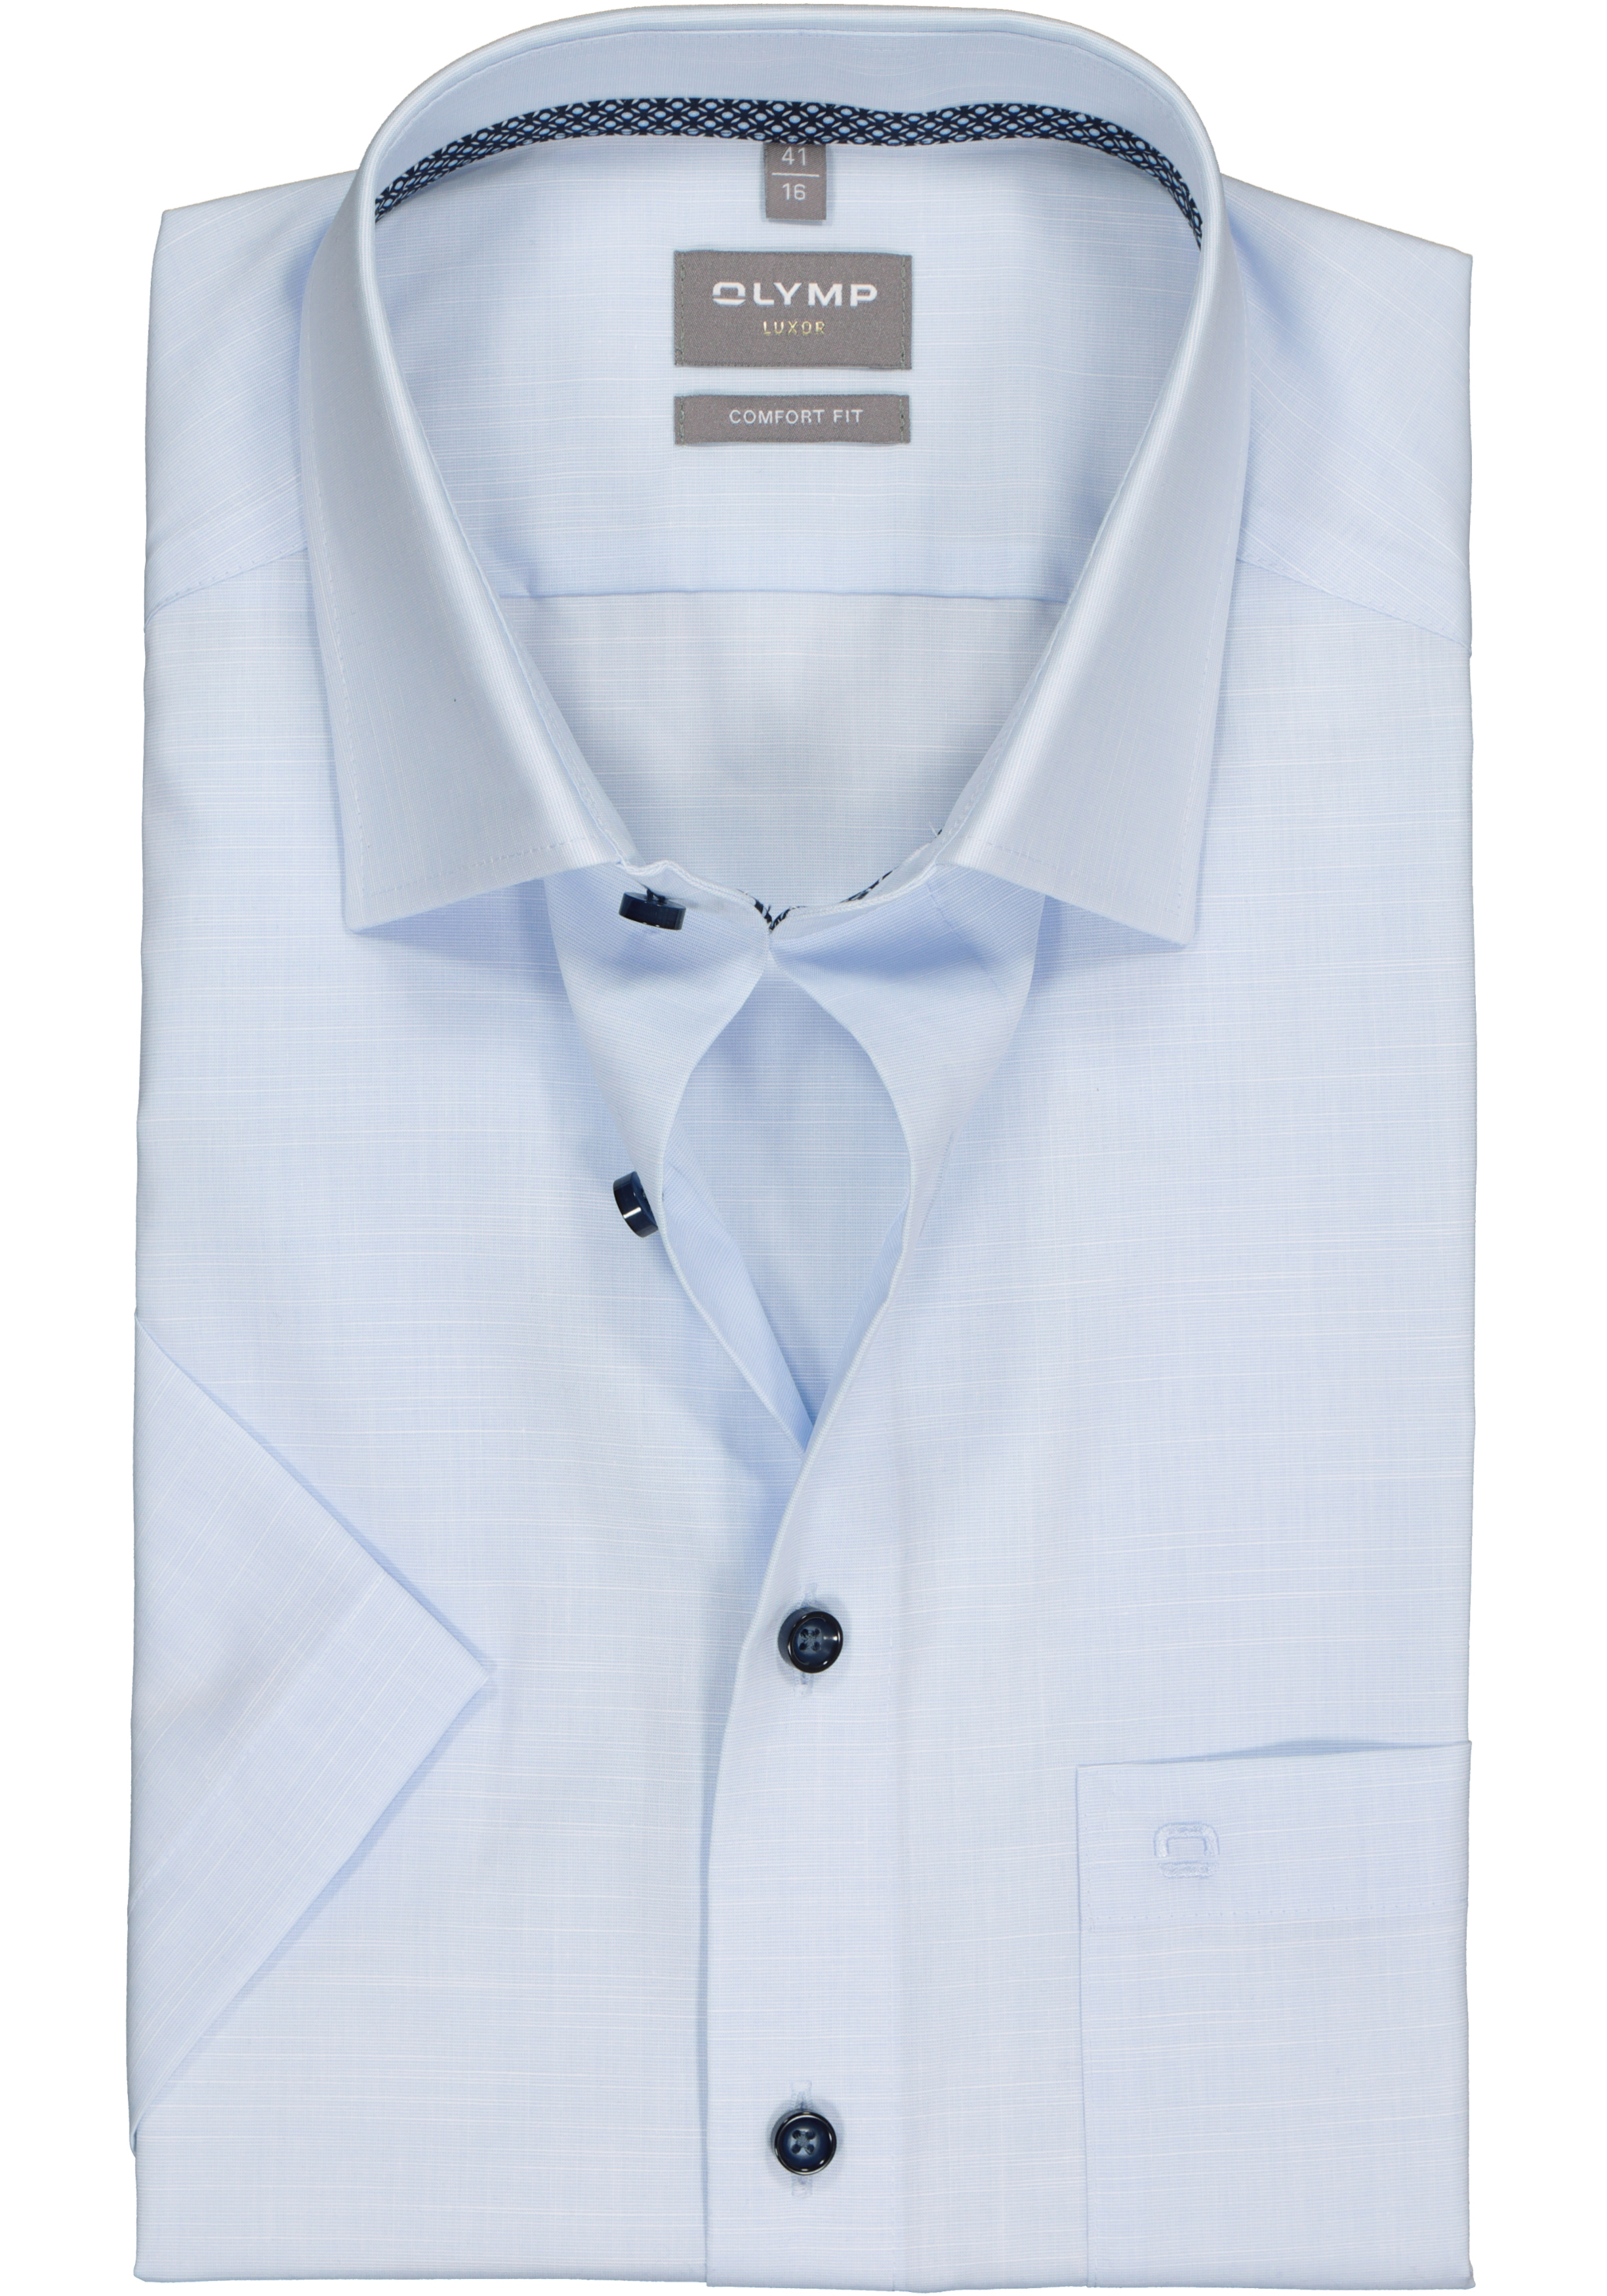 OLYMP comfort fit overhemd, korte mouw, structuur, lichtblauw (contrast)